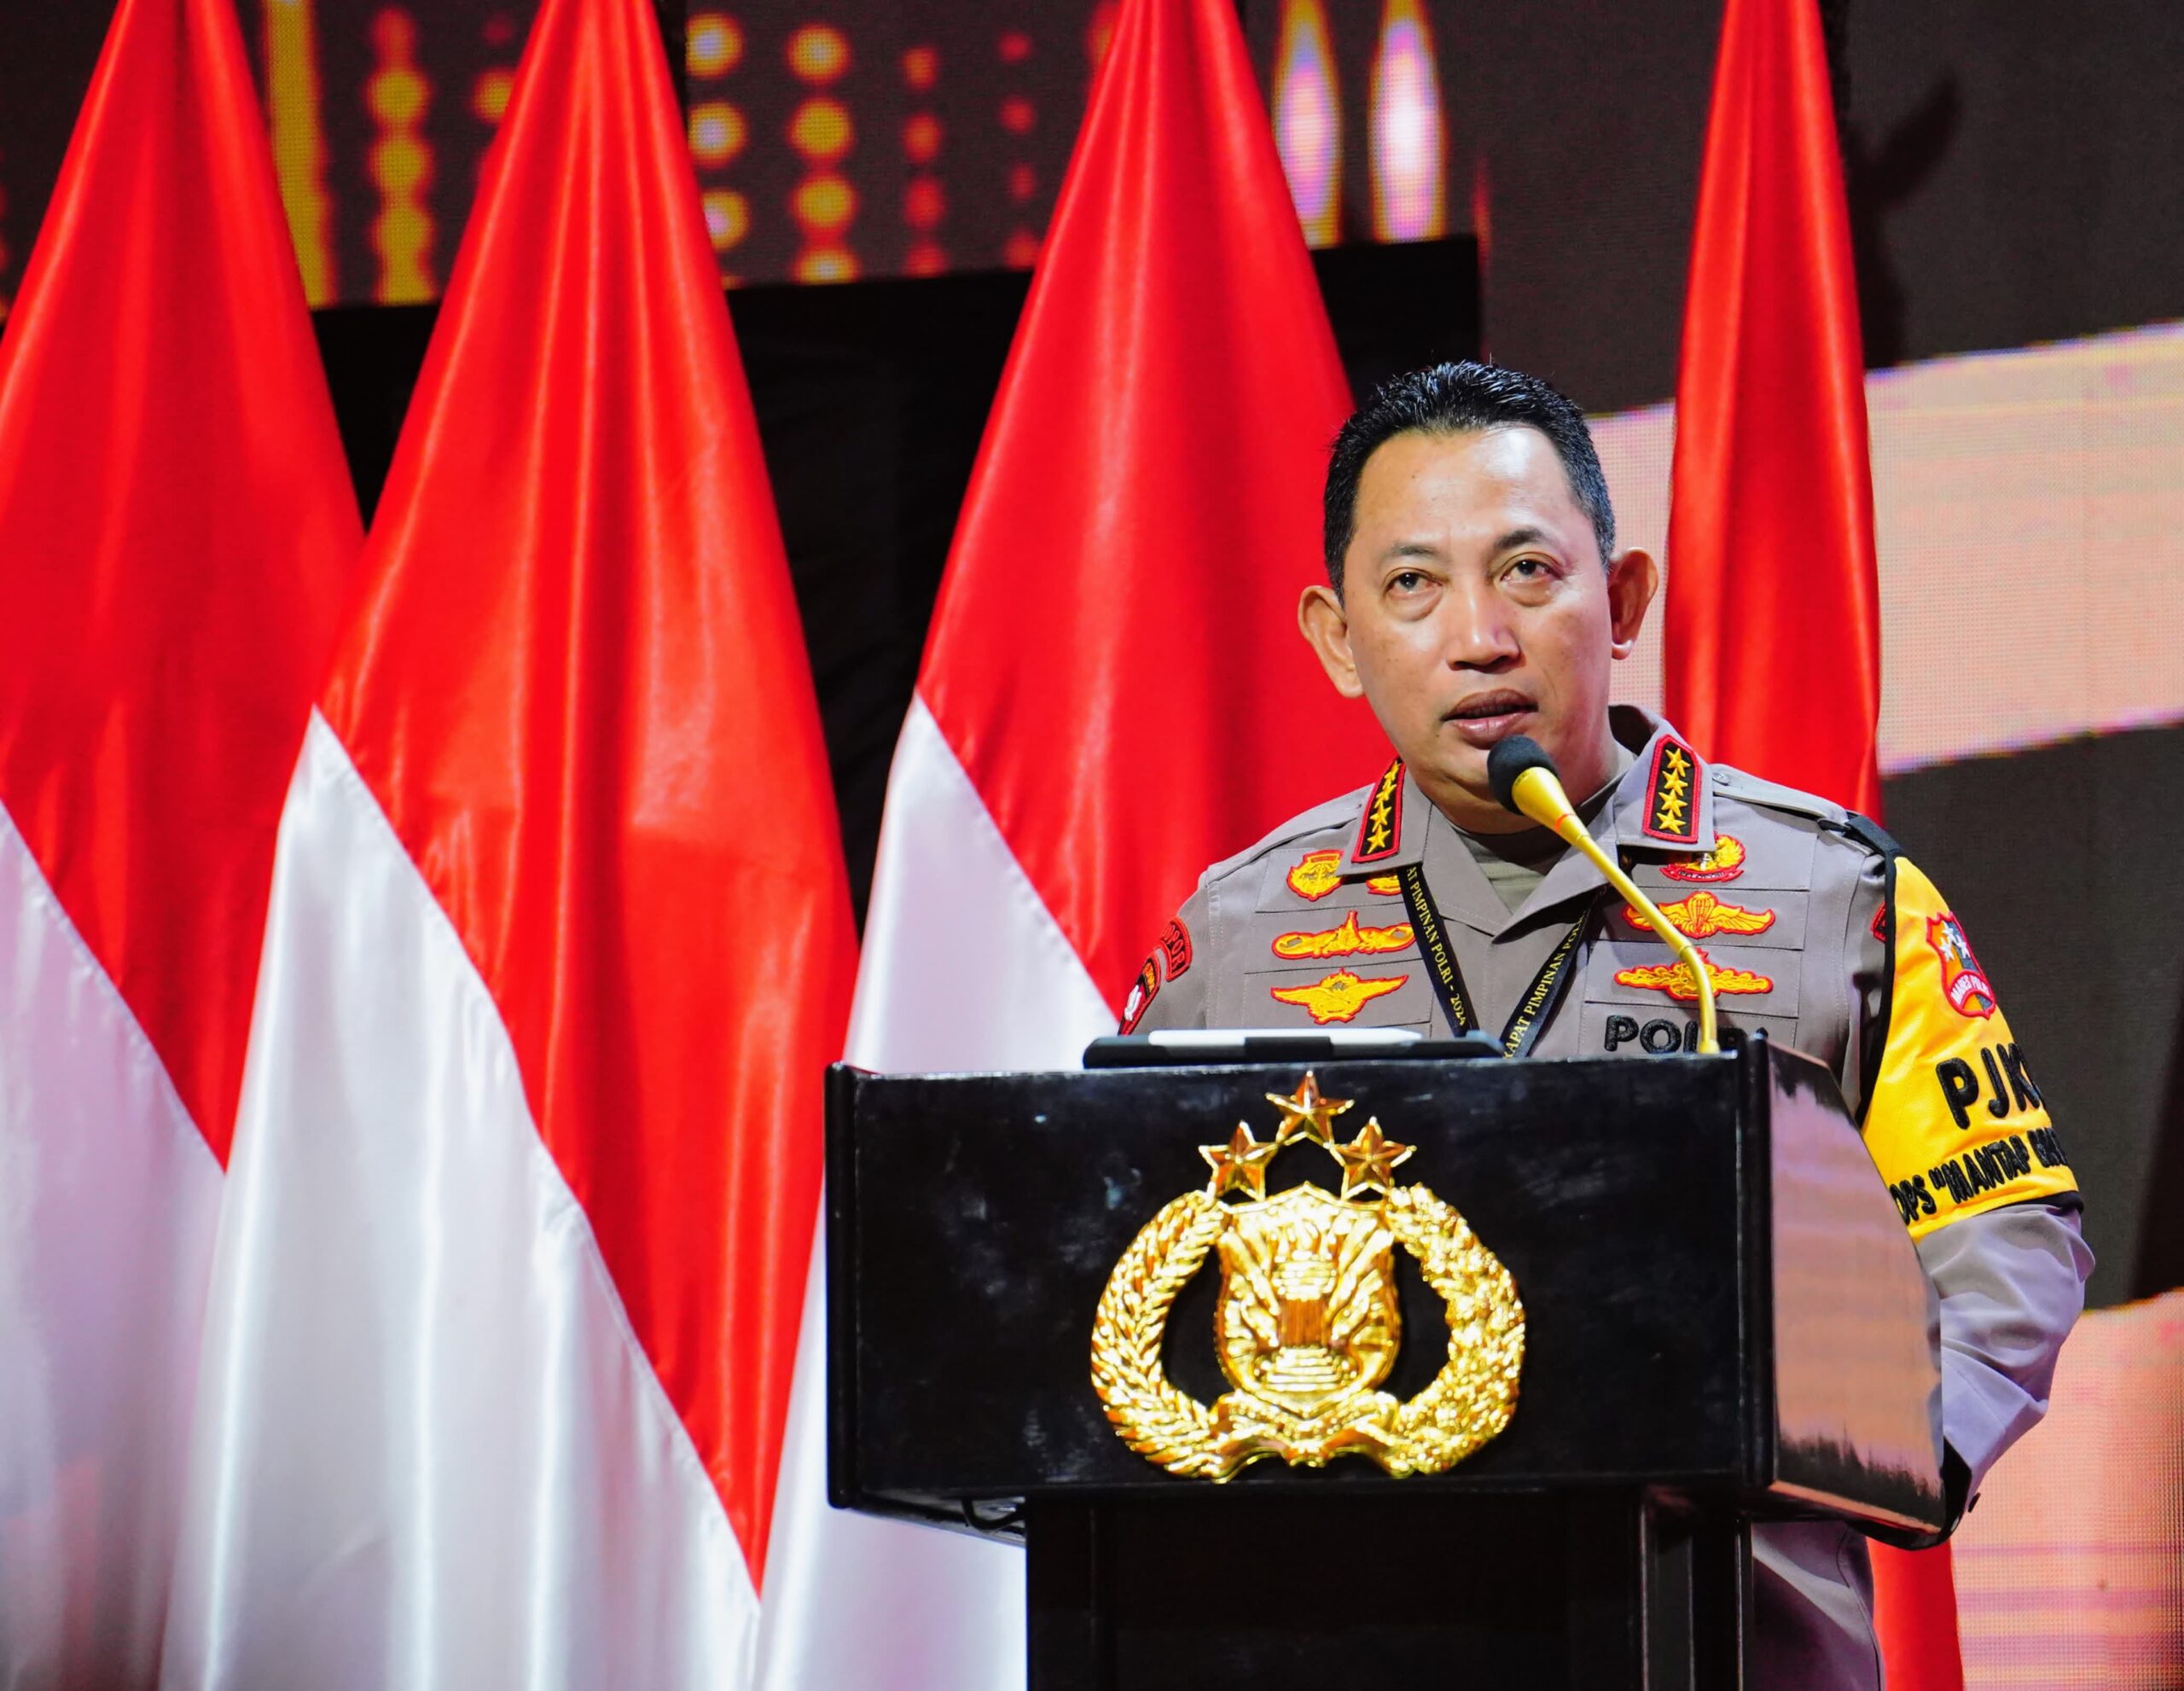 Kapolri Tekankan Persatuan-Kesatuan Modal Utama Wujudkan Indonesia Emas 2045 di Rapim Polri